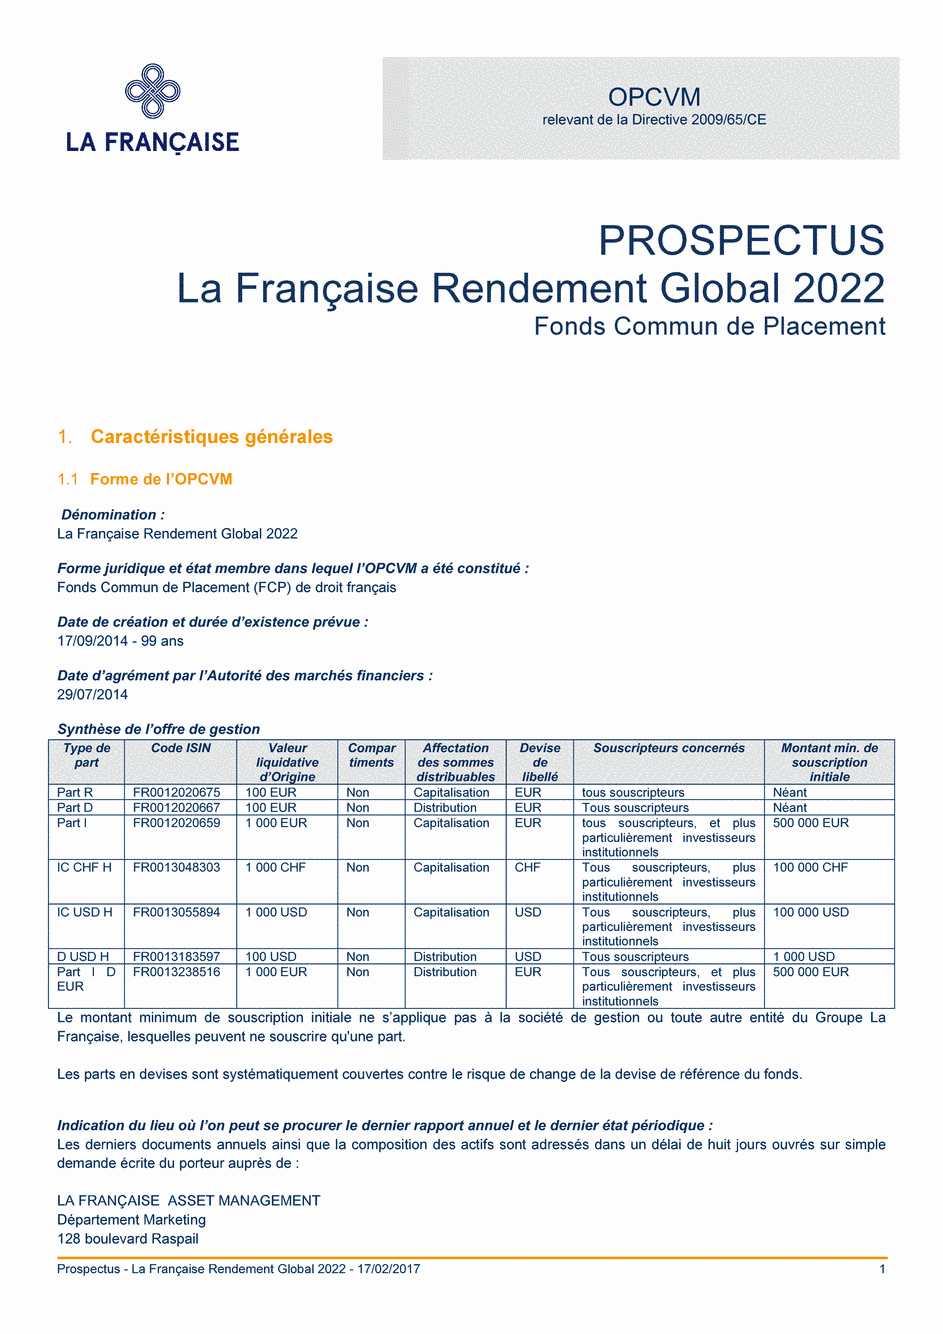 Prospectus La Française Rendement Global 2022 - Part I - 17/02/2017 - Français